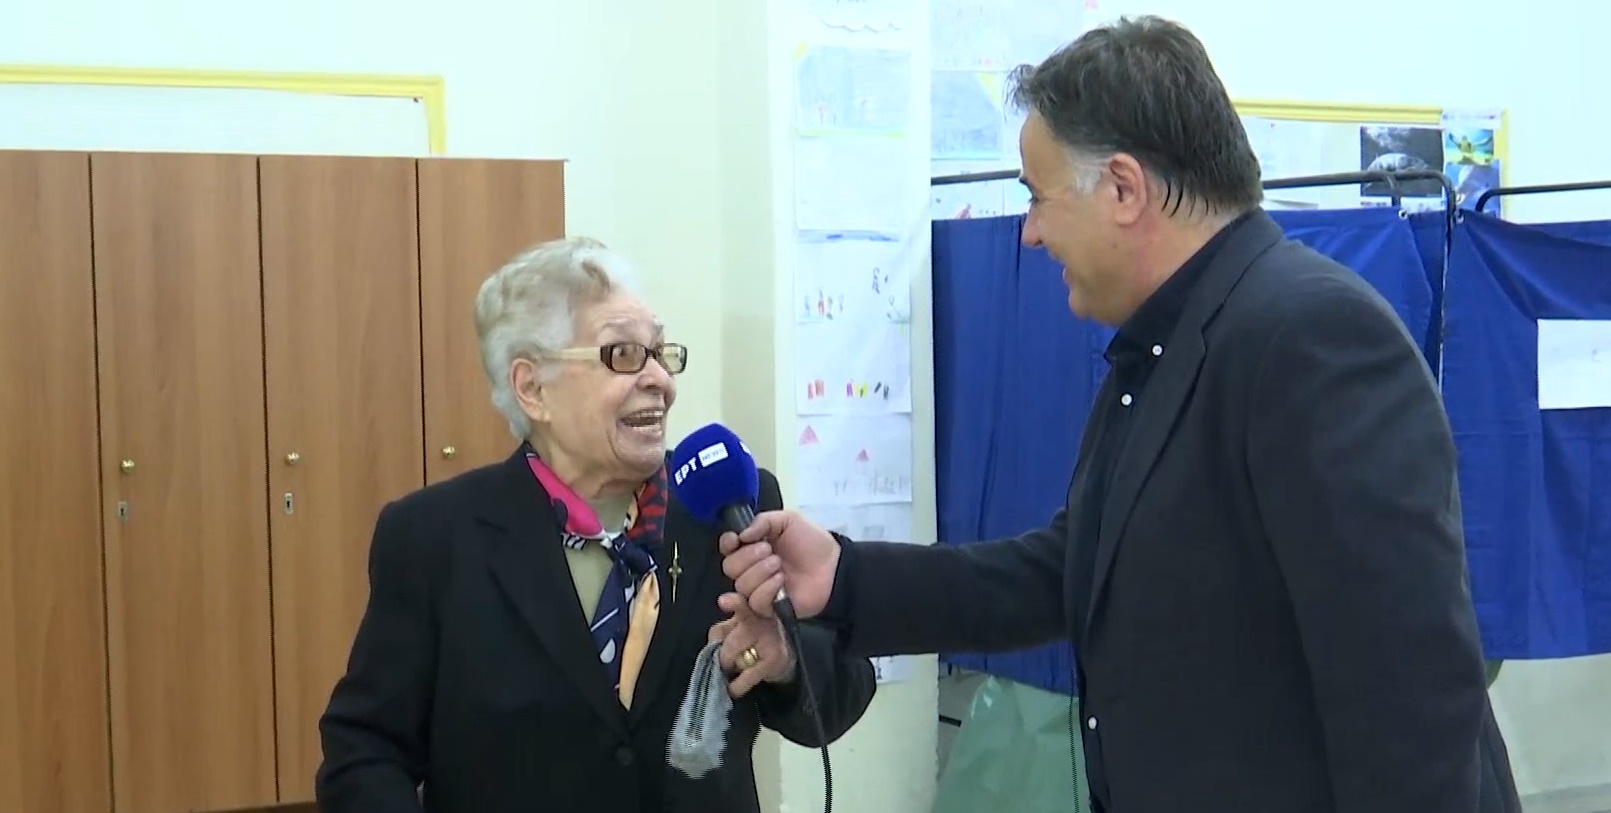 Σέρρες: «Ελπίζω να είναι η τελευταία φορά που ψηφίζω», δήλωσε ηλικιωμένη στην κάμερα της ΕΡΤ